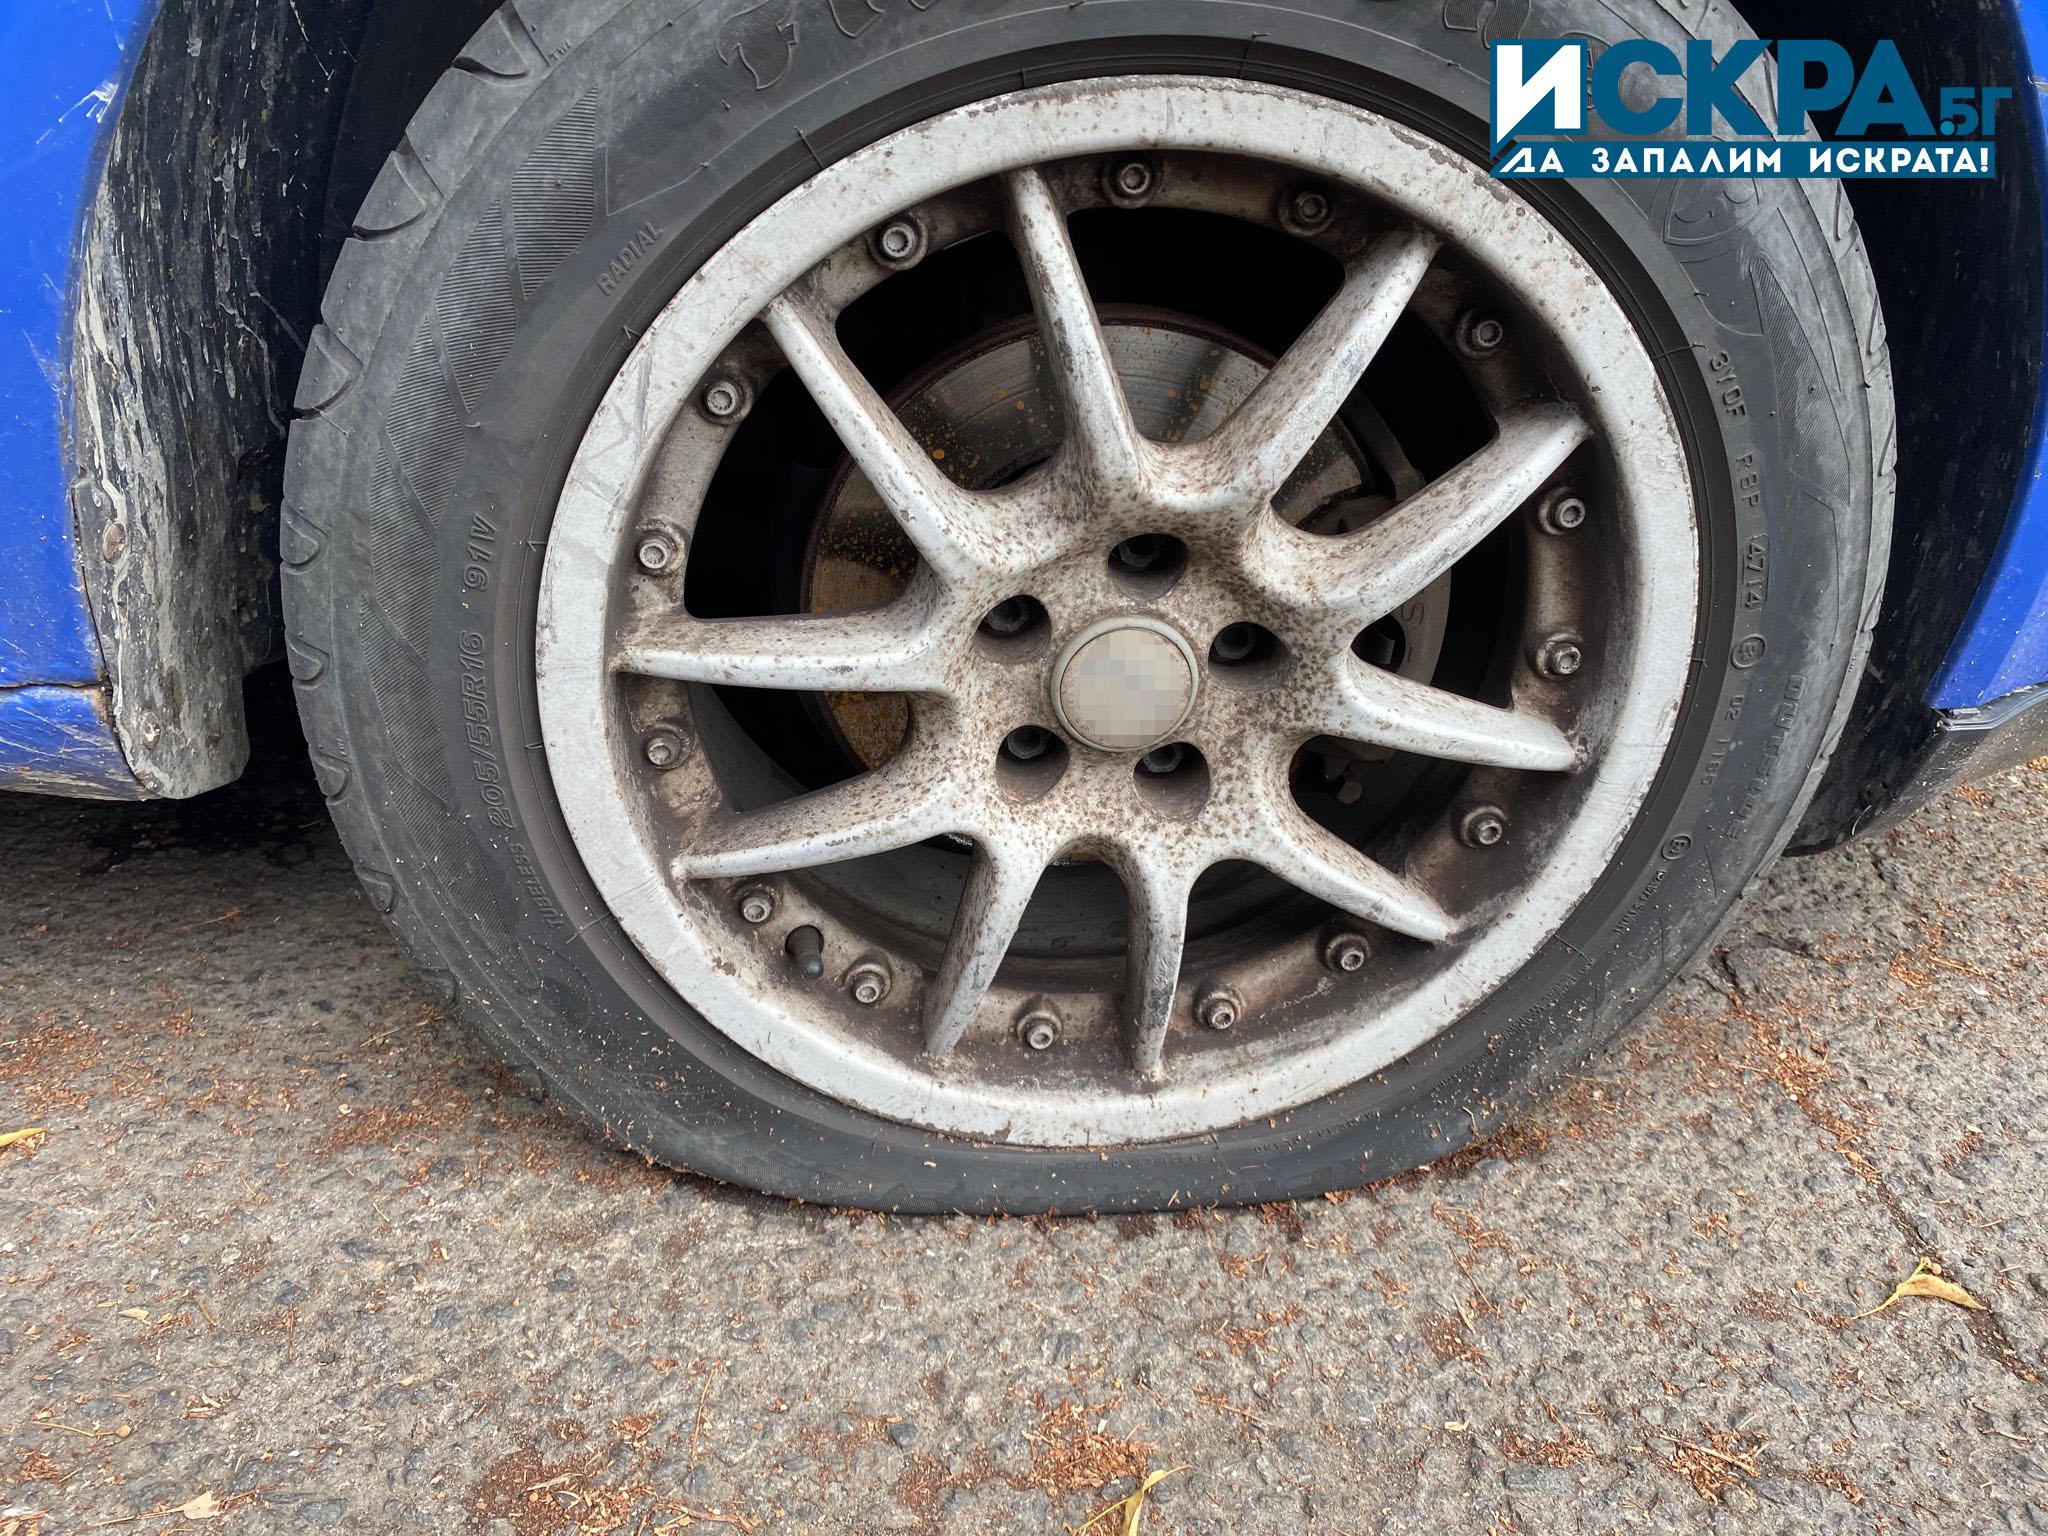 Ломски полицаи са разкрили мъж срязал гуми на лек автомобил